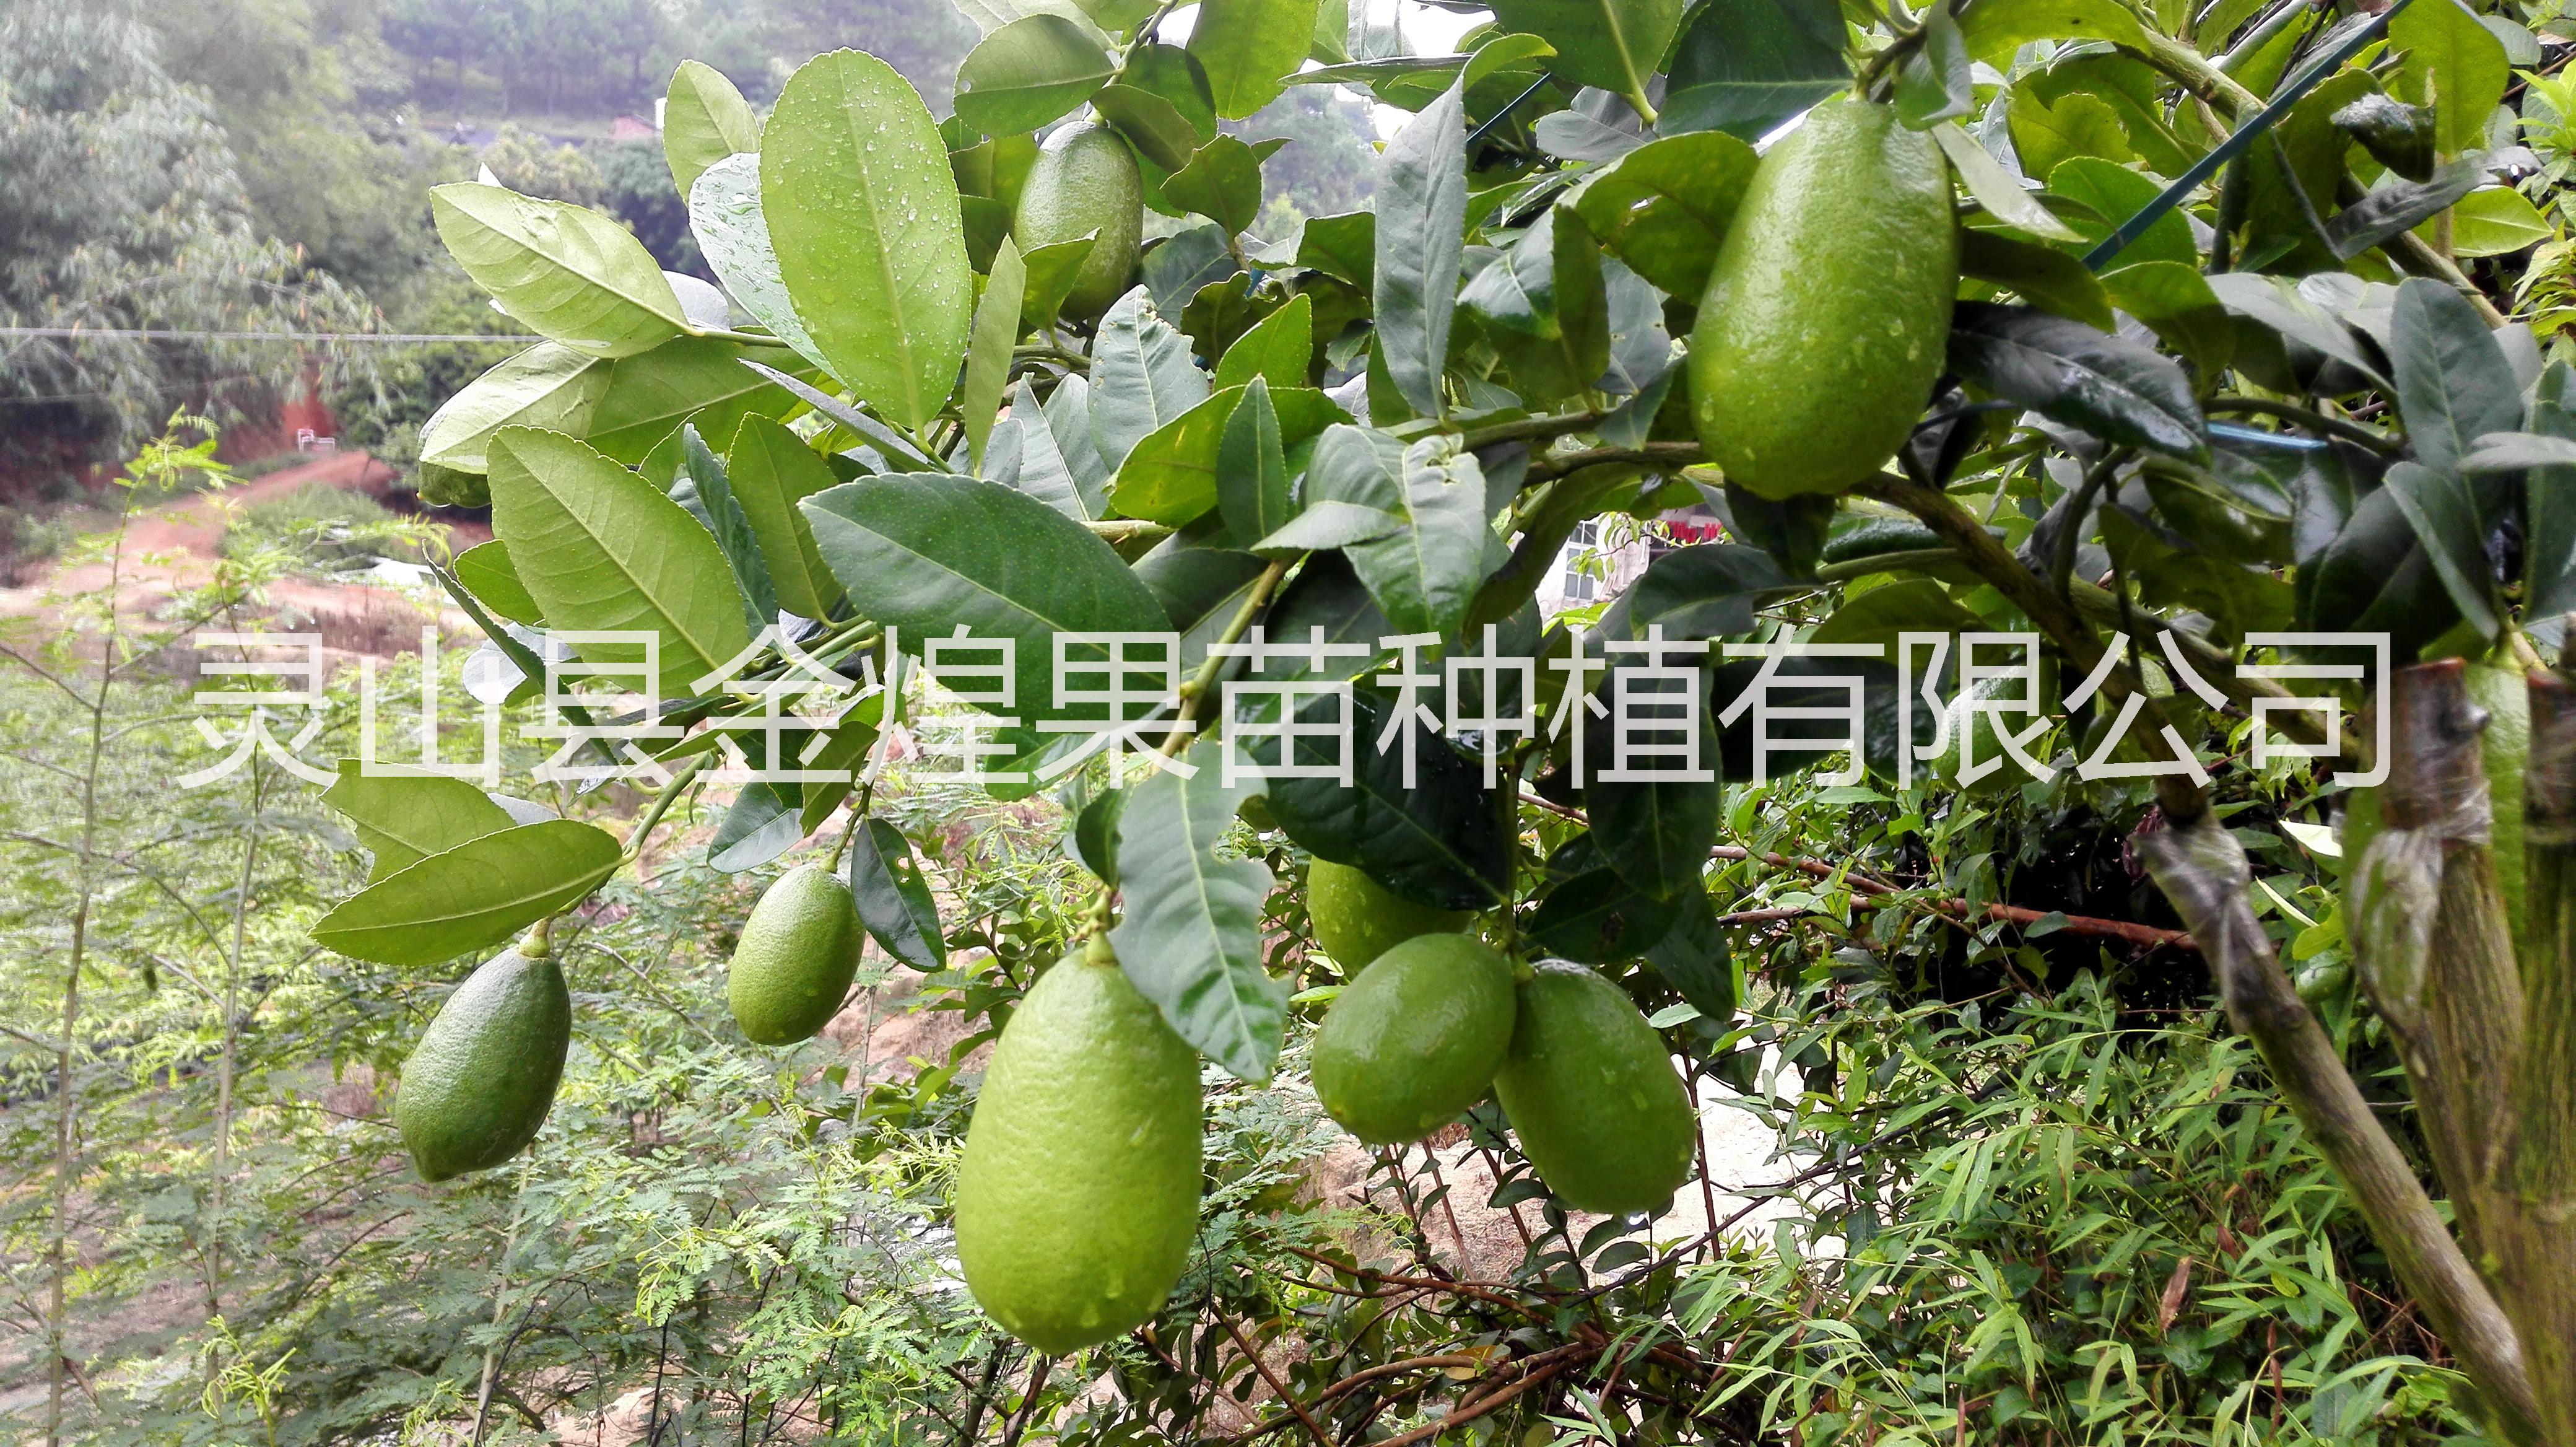 柠檬果苗台湾四季香水柠檬无籽柠檬苗北京柠檬